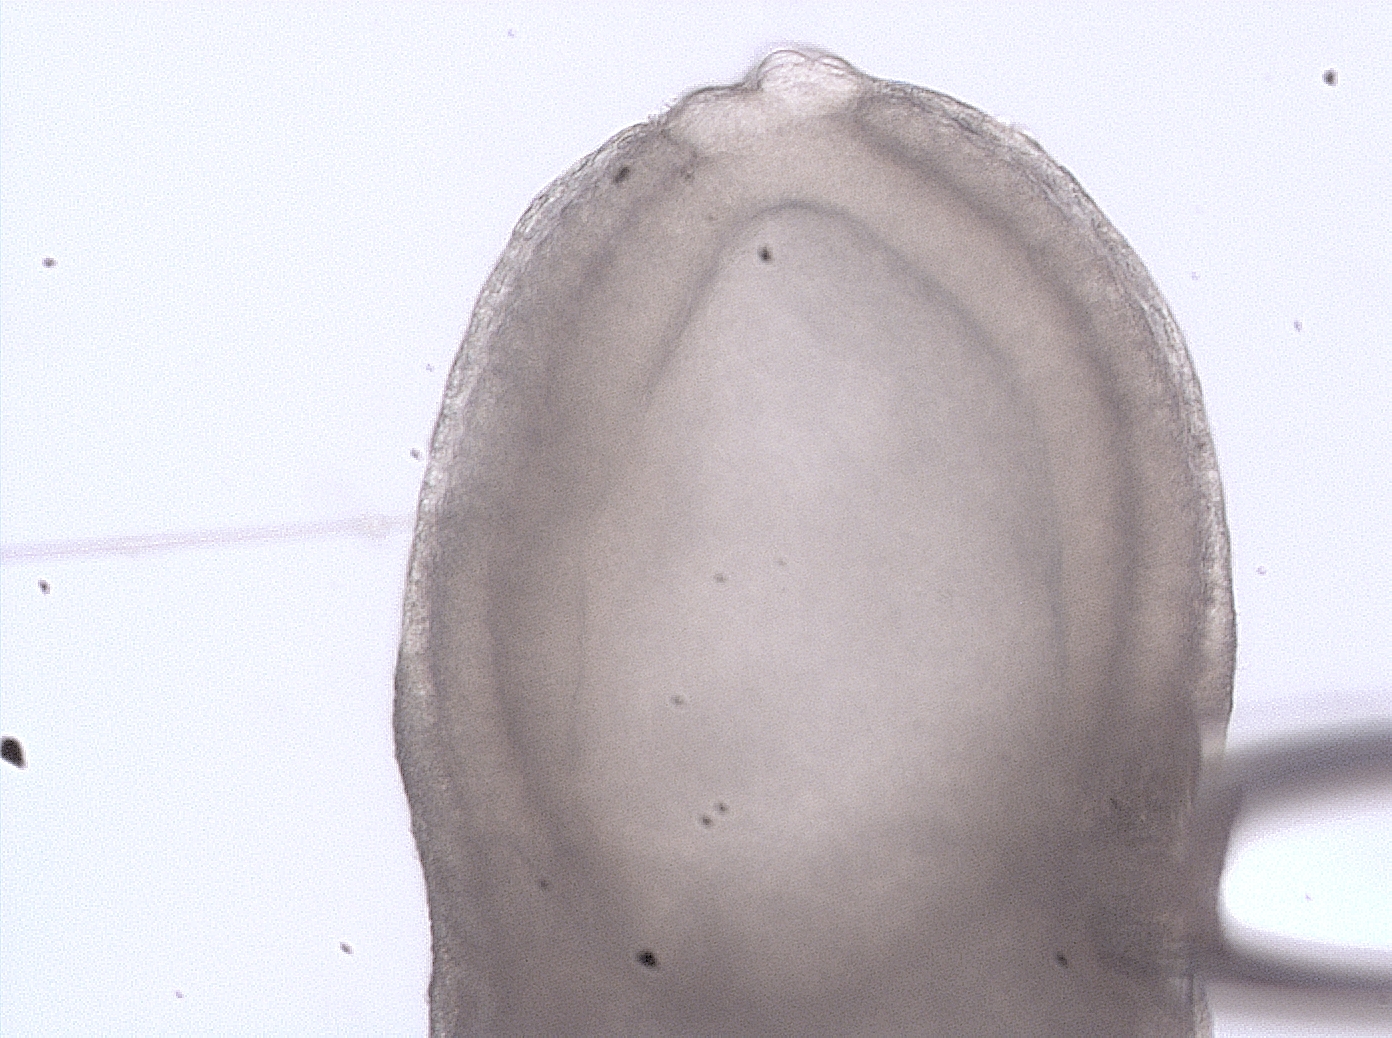 Detalle del punto de inyección de un embrión de día 6,5 post coito (6,5 dpc) en sesión de microinyección con Cre-recombinasa